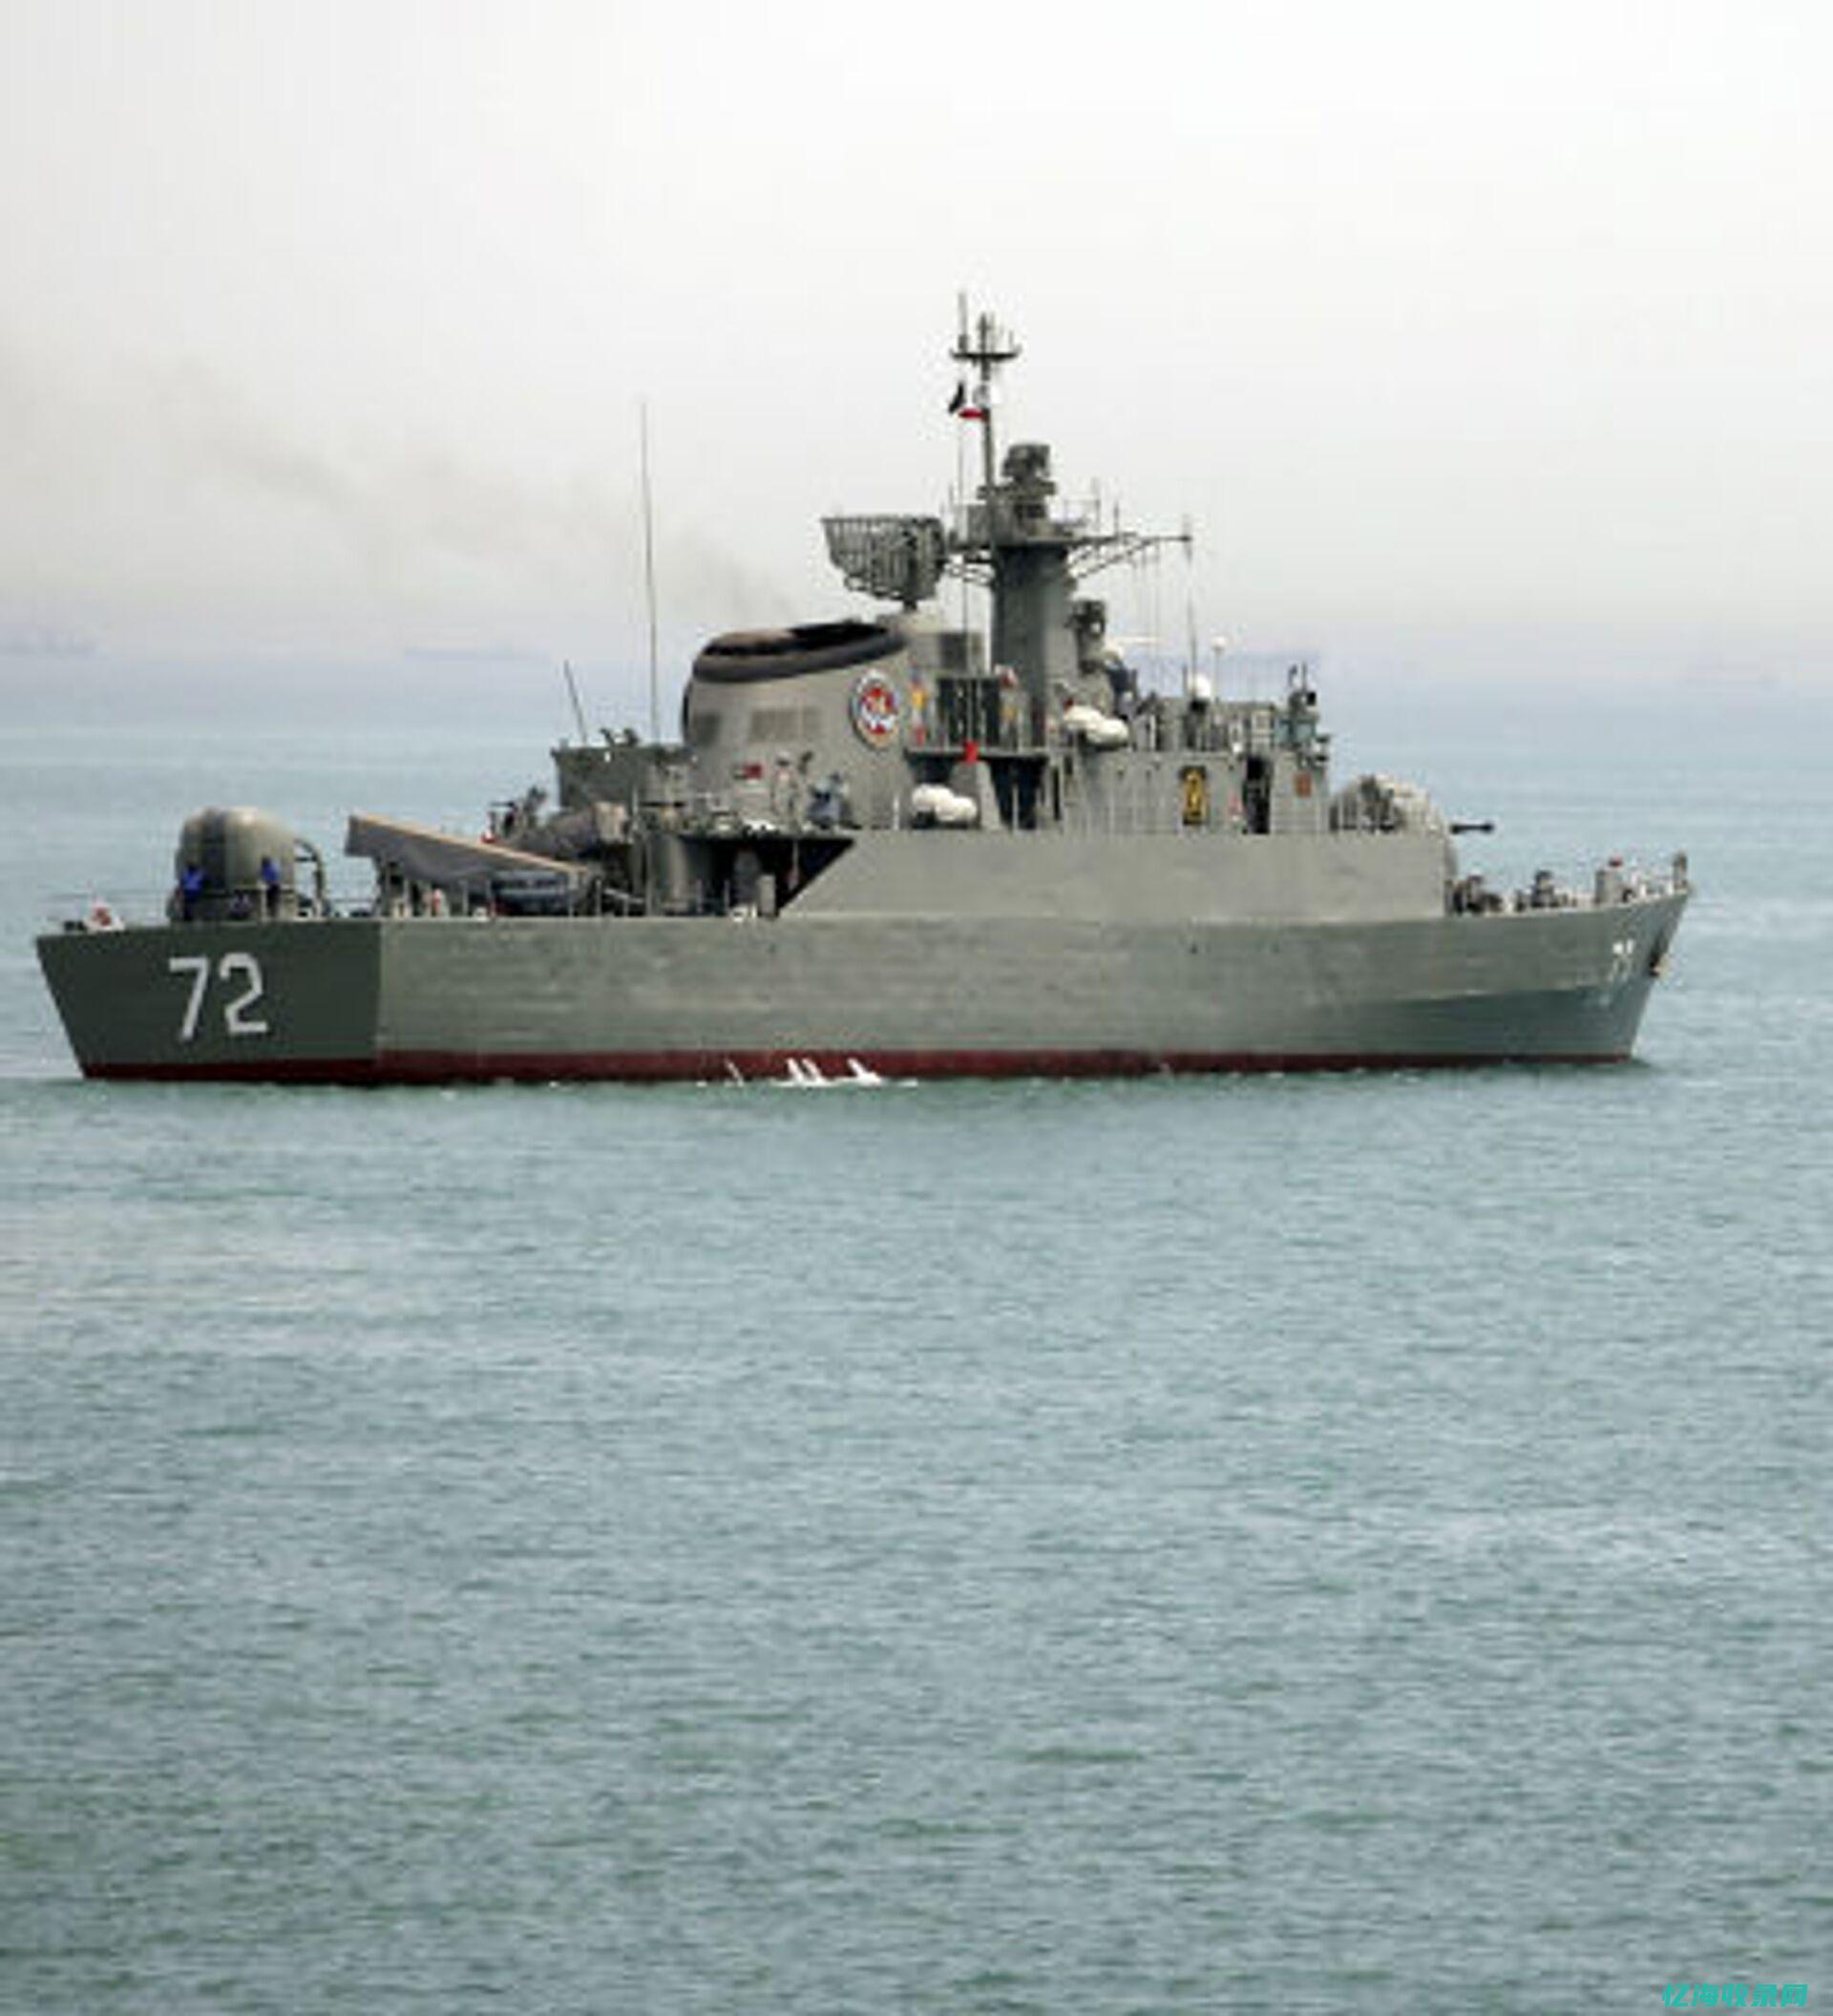 伊朗海军司令披露-伊军在亚丁湾和大东洋波动口头护航工作 (伊朗海军司令部被炸了吗)